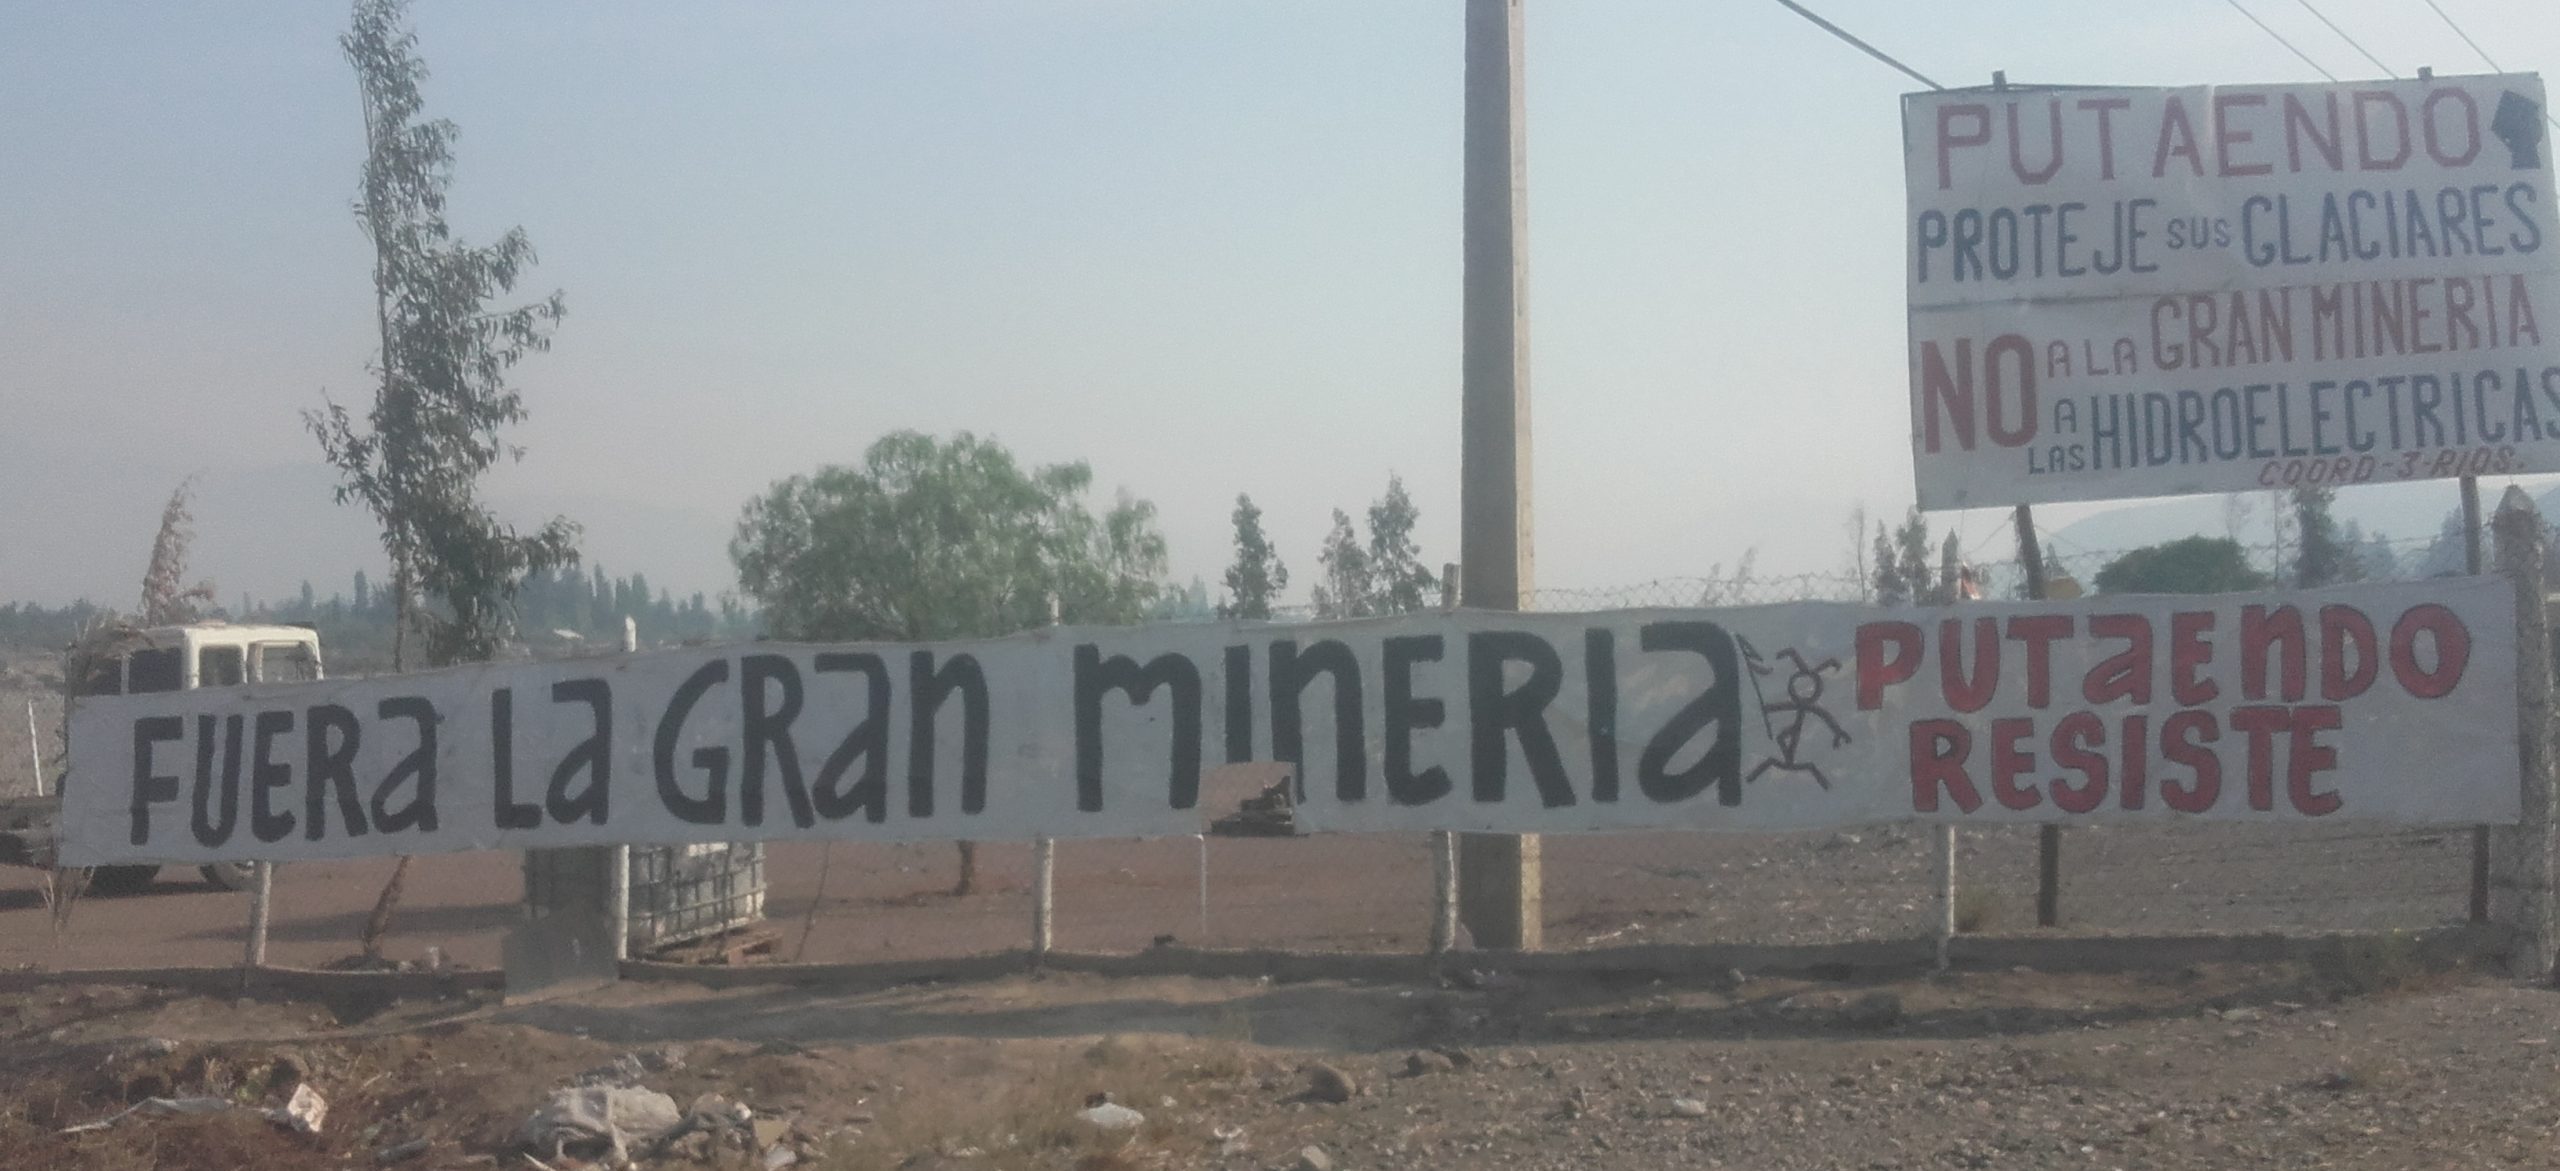 Grupo ambientalista y municipio de Putaendo rechazan el proyecto de sondaje de minera Vizcachitas